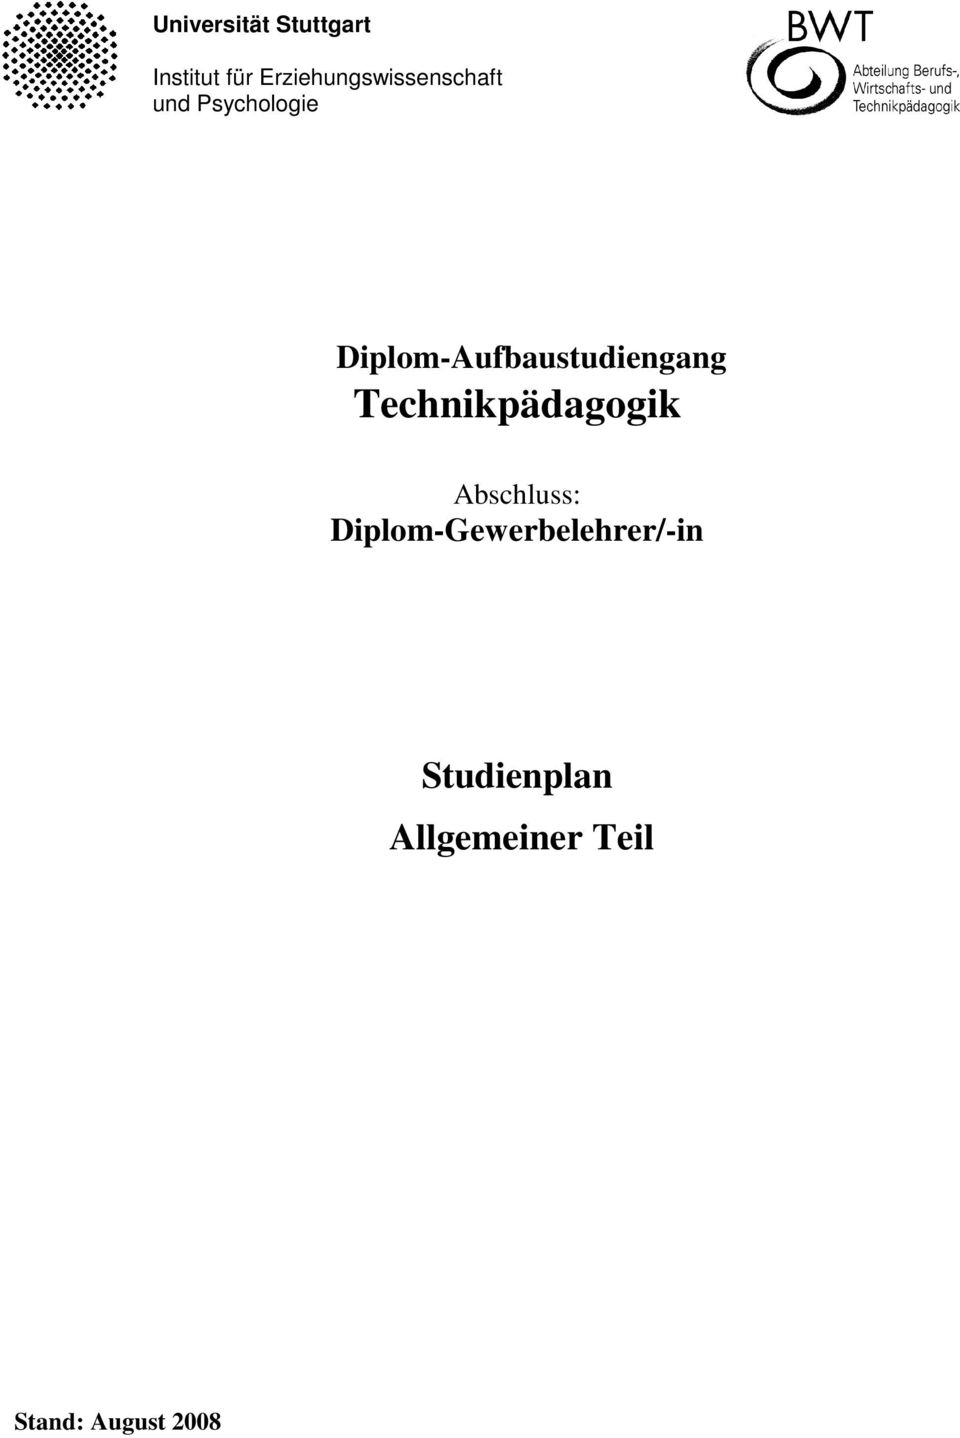 Diplom-Aufbaustudiengang Technikpädagogik